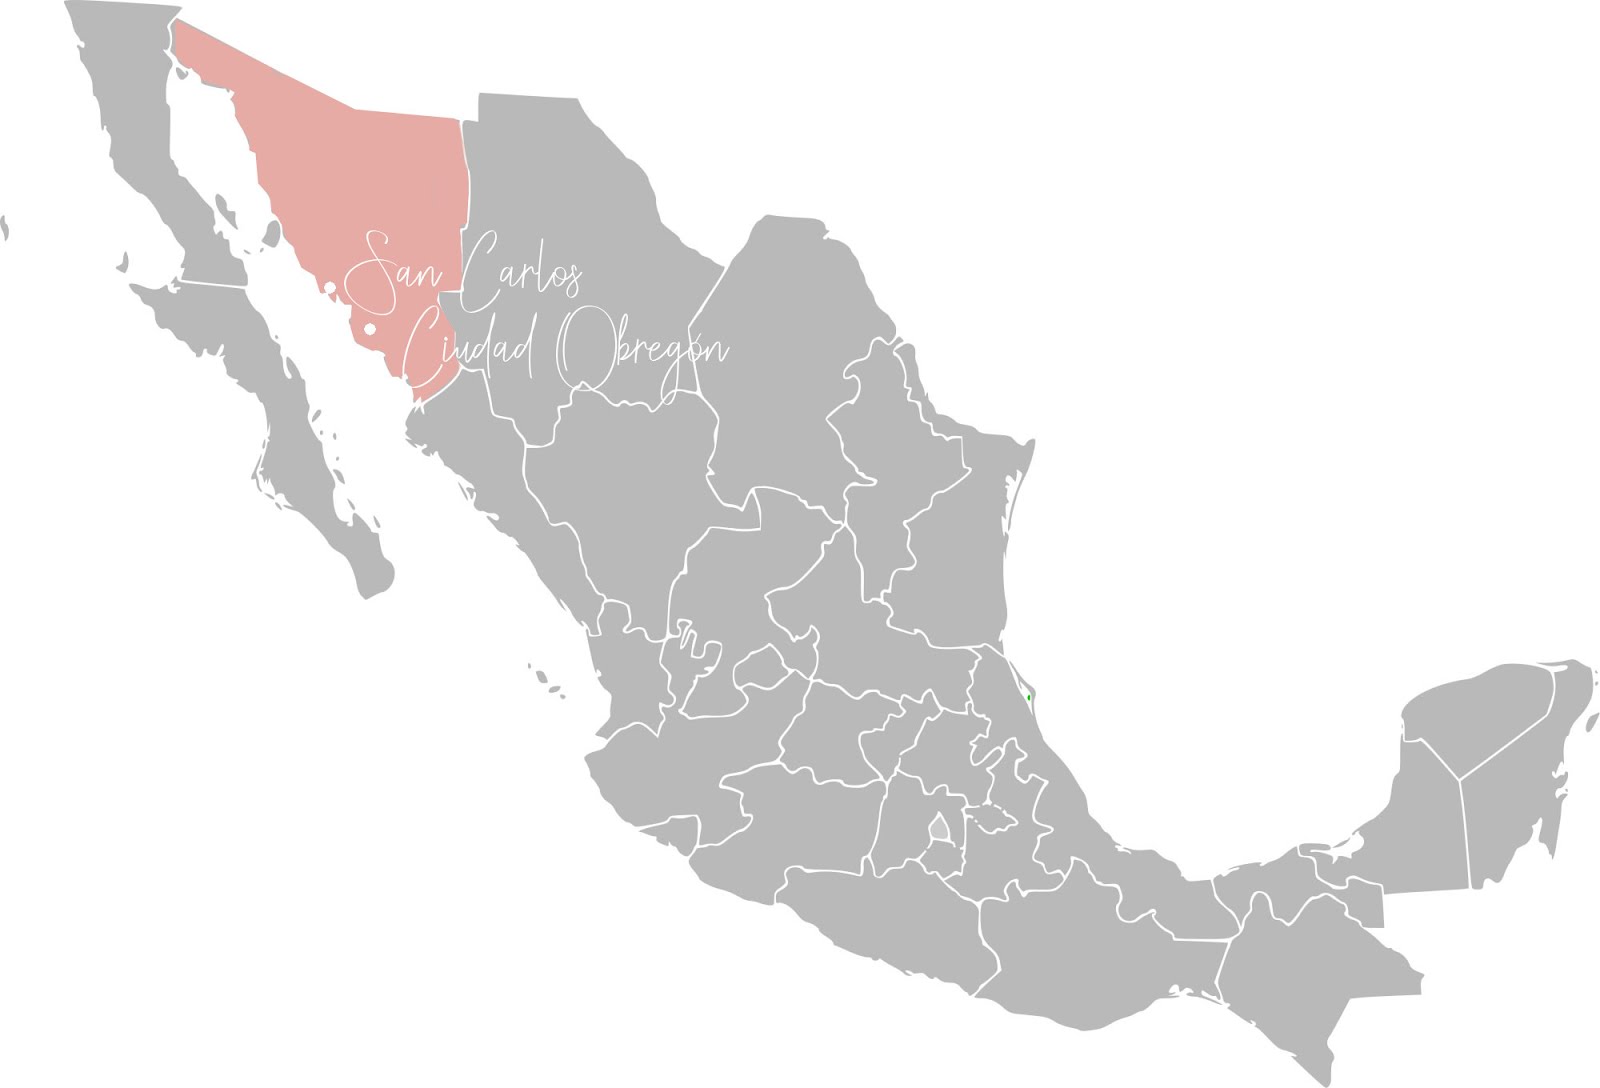 carte du mexique représentant en orange la zone du nord ouest avec les villes de ciudad obregon et san carlos écrites en blanc